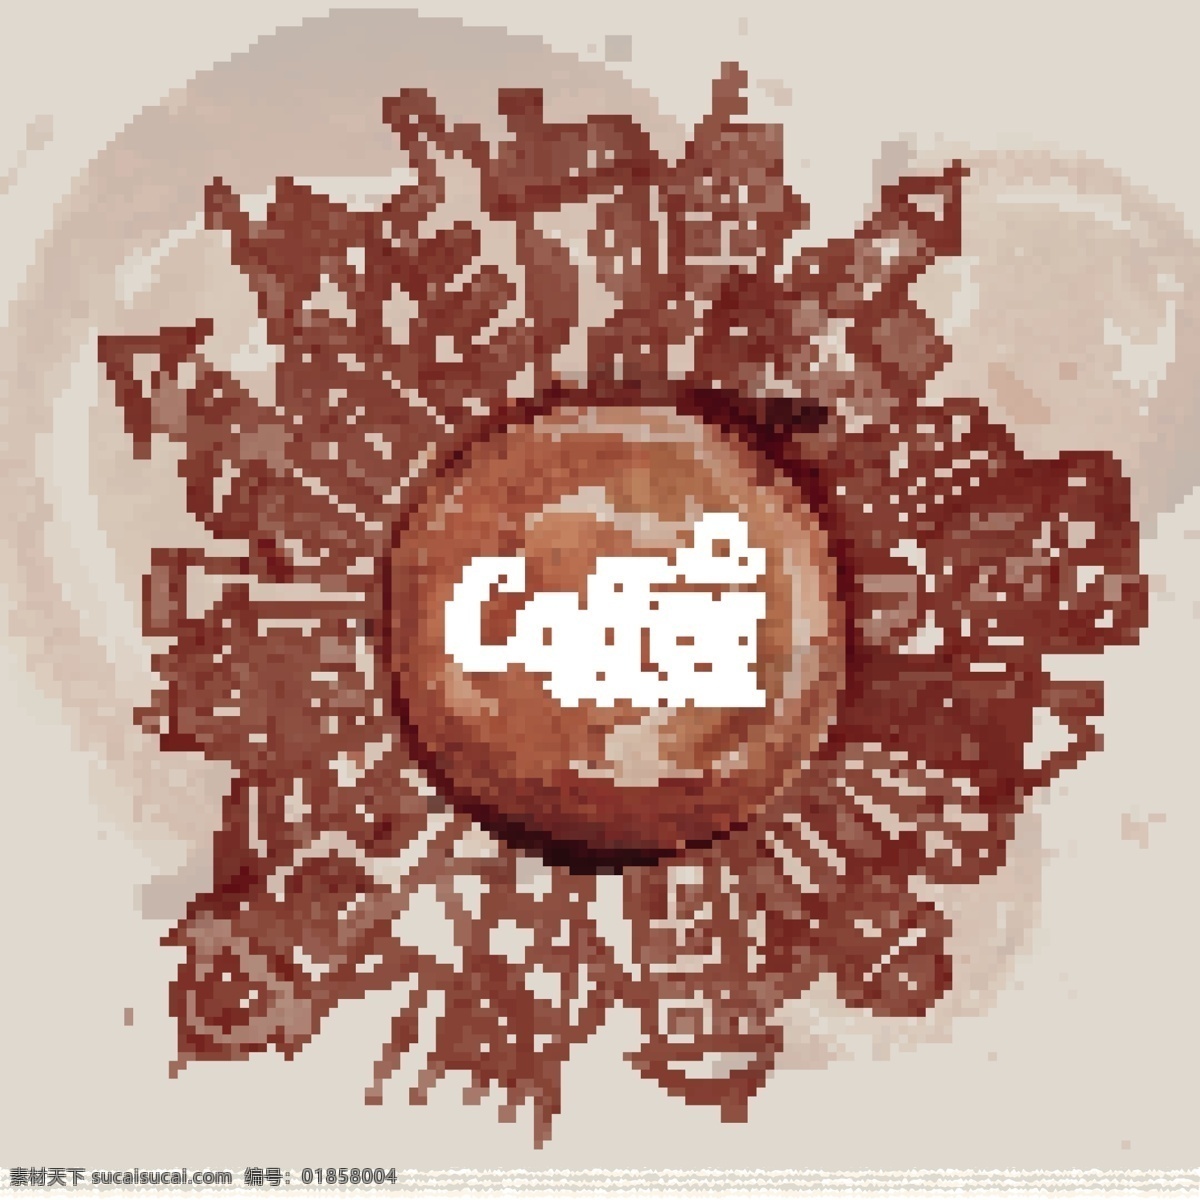 咖啡渍 绘 城市 背景 建筑 咖啡 咖啡屋 旅行 矢量图 海报